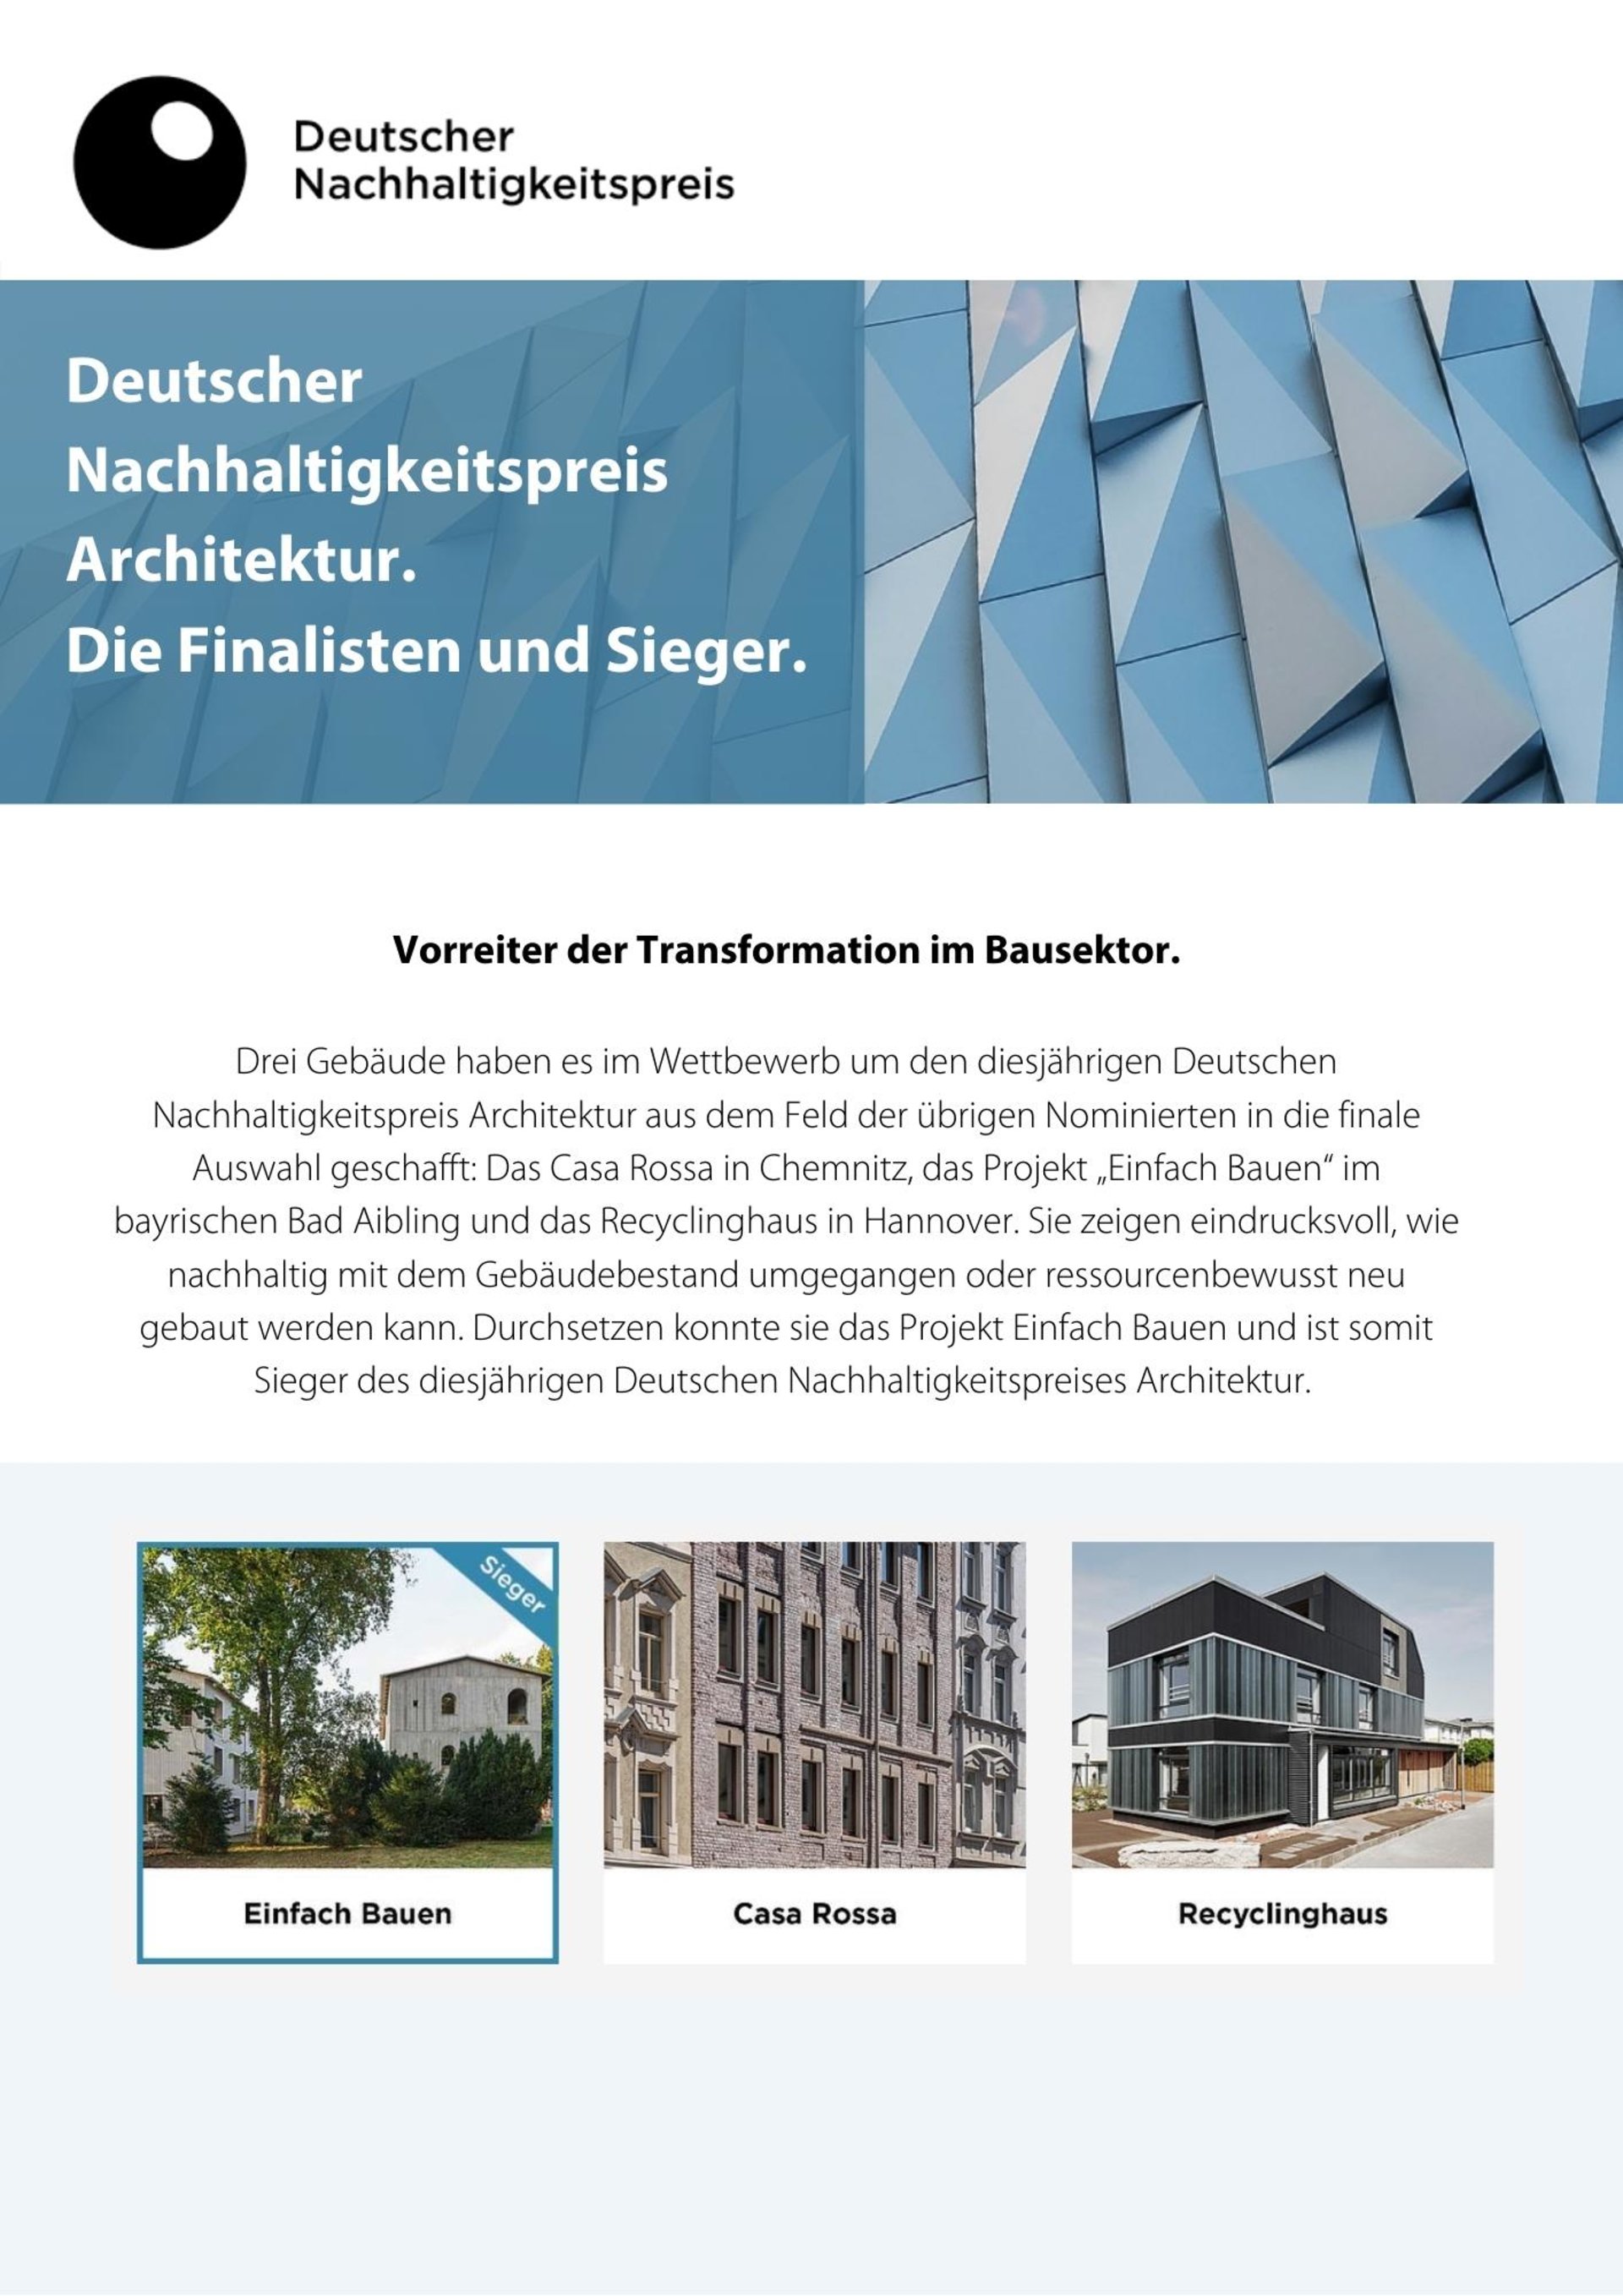 Recyclinghaus_Deutscher Nachhaltigkeitspreis Architektur 2022